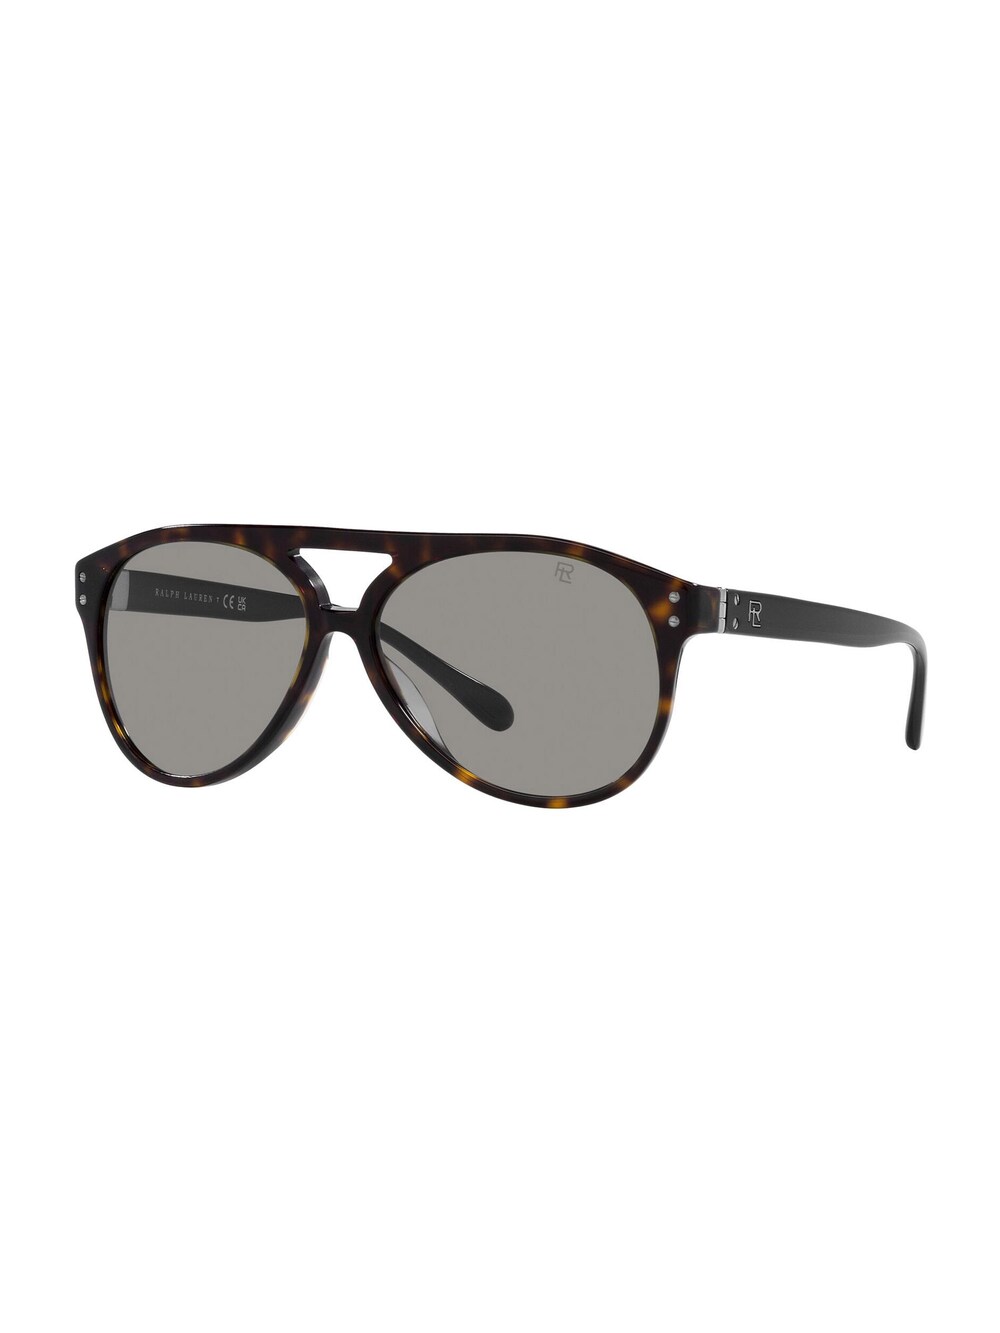 ковролин принт карамель 170 3м коричневый Солнечные очки Polo Ralph Lauren, коричневый/карамель/темно-коричневый